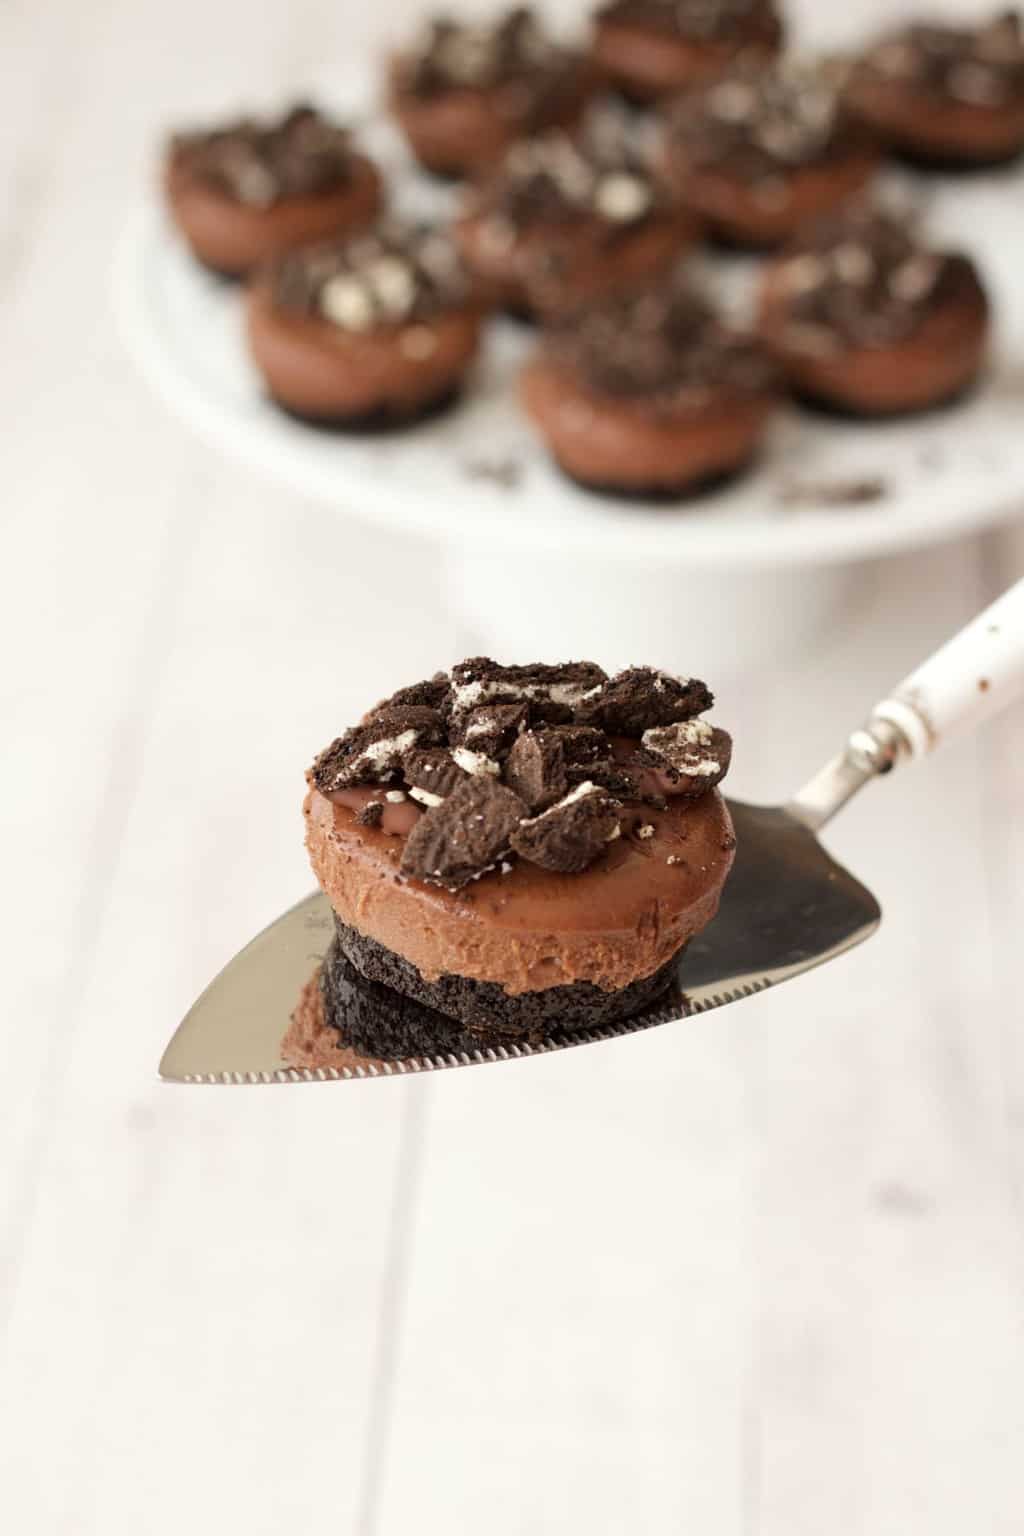 Mini Vegan Chocolate Cheesecake #vegan #lovingitvegan #cheesecake #dessert #dairyfree #oreo